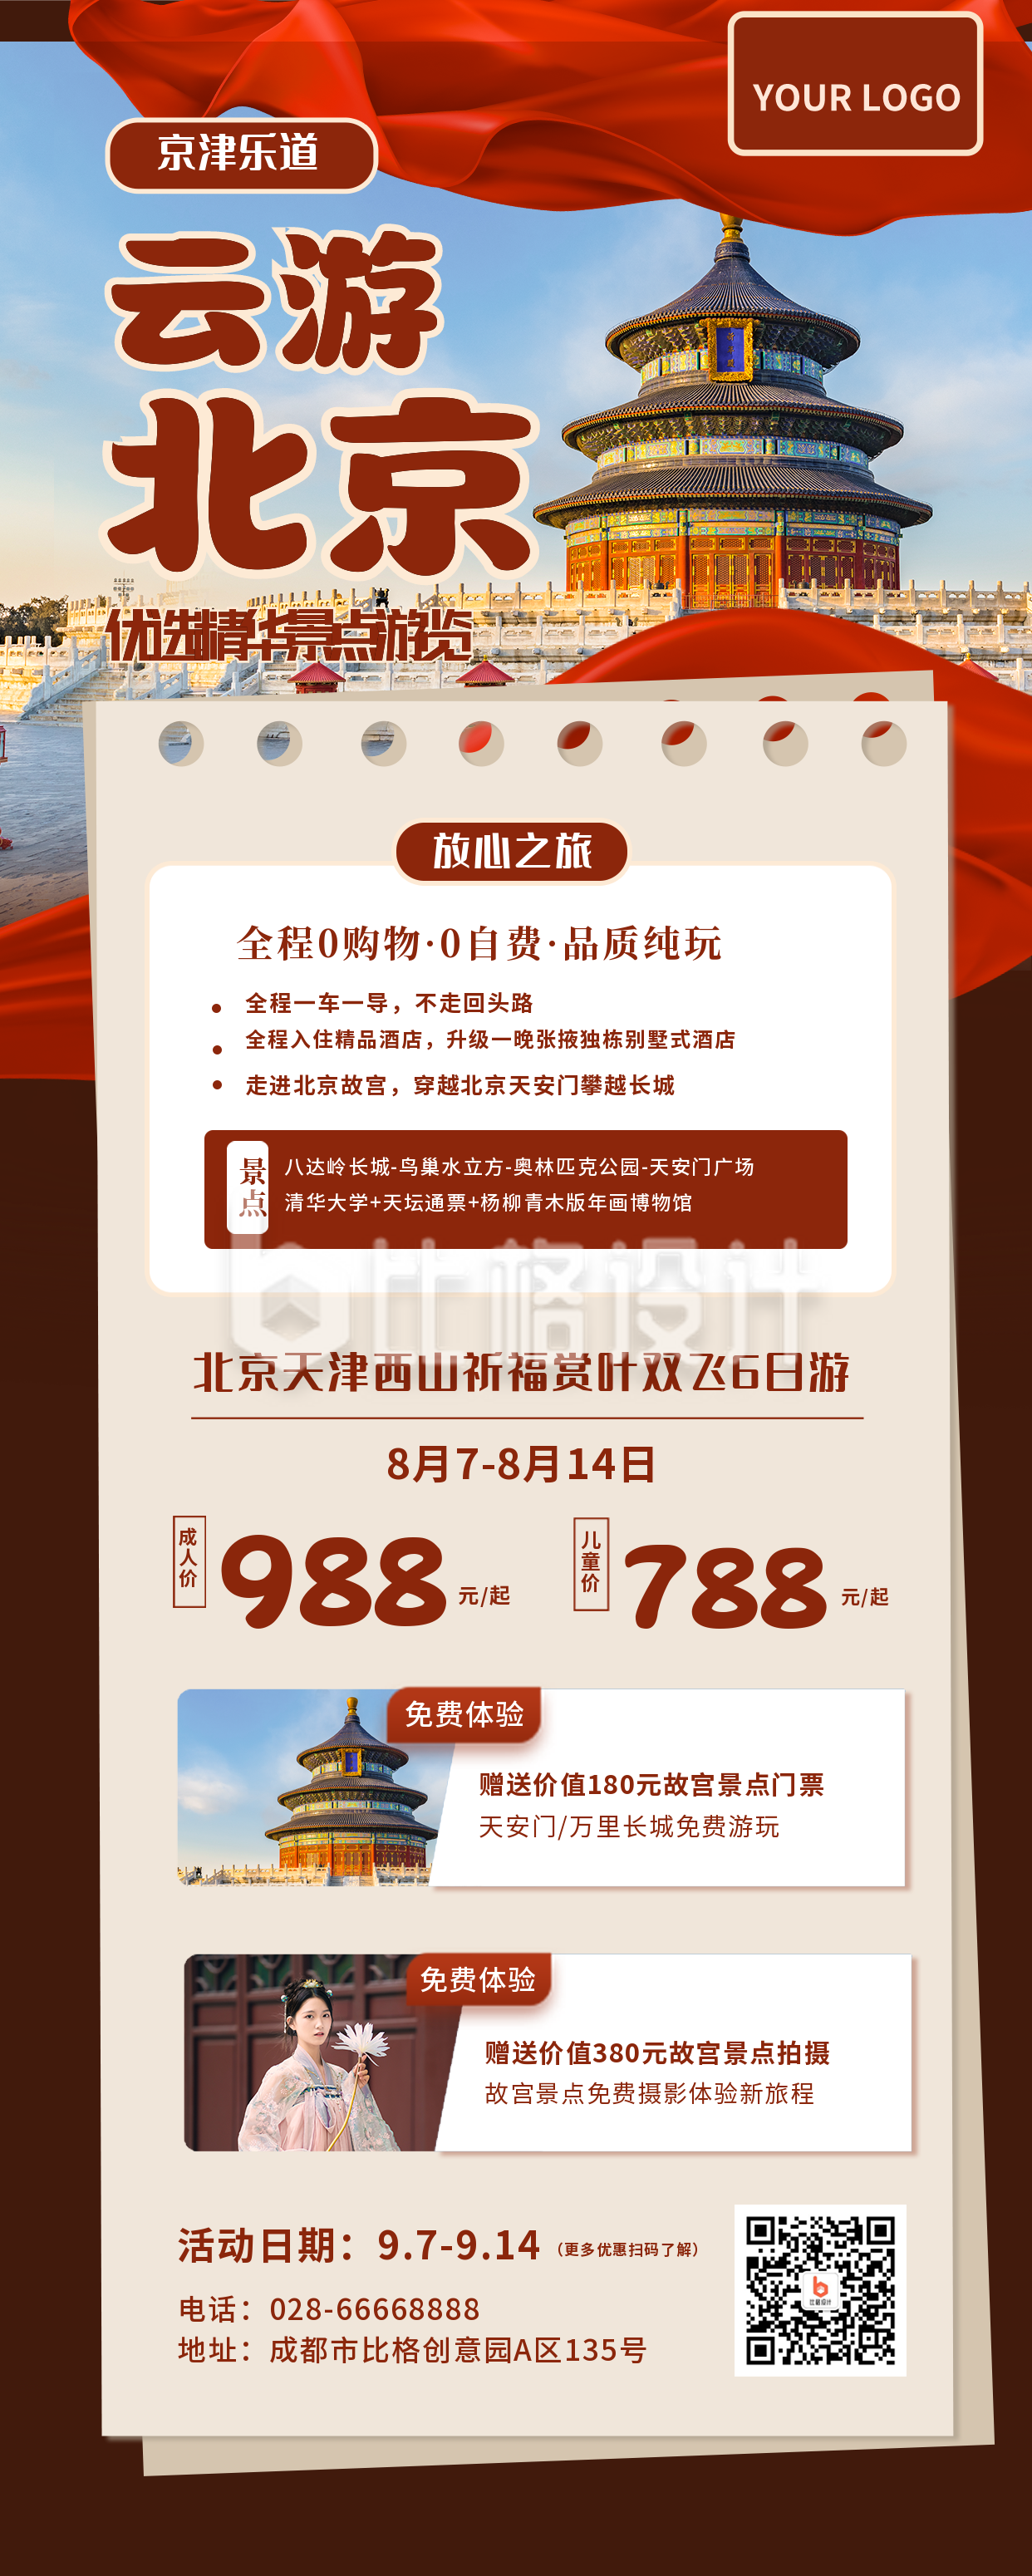 北京国内旅游活动促销手机海报